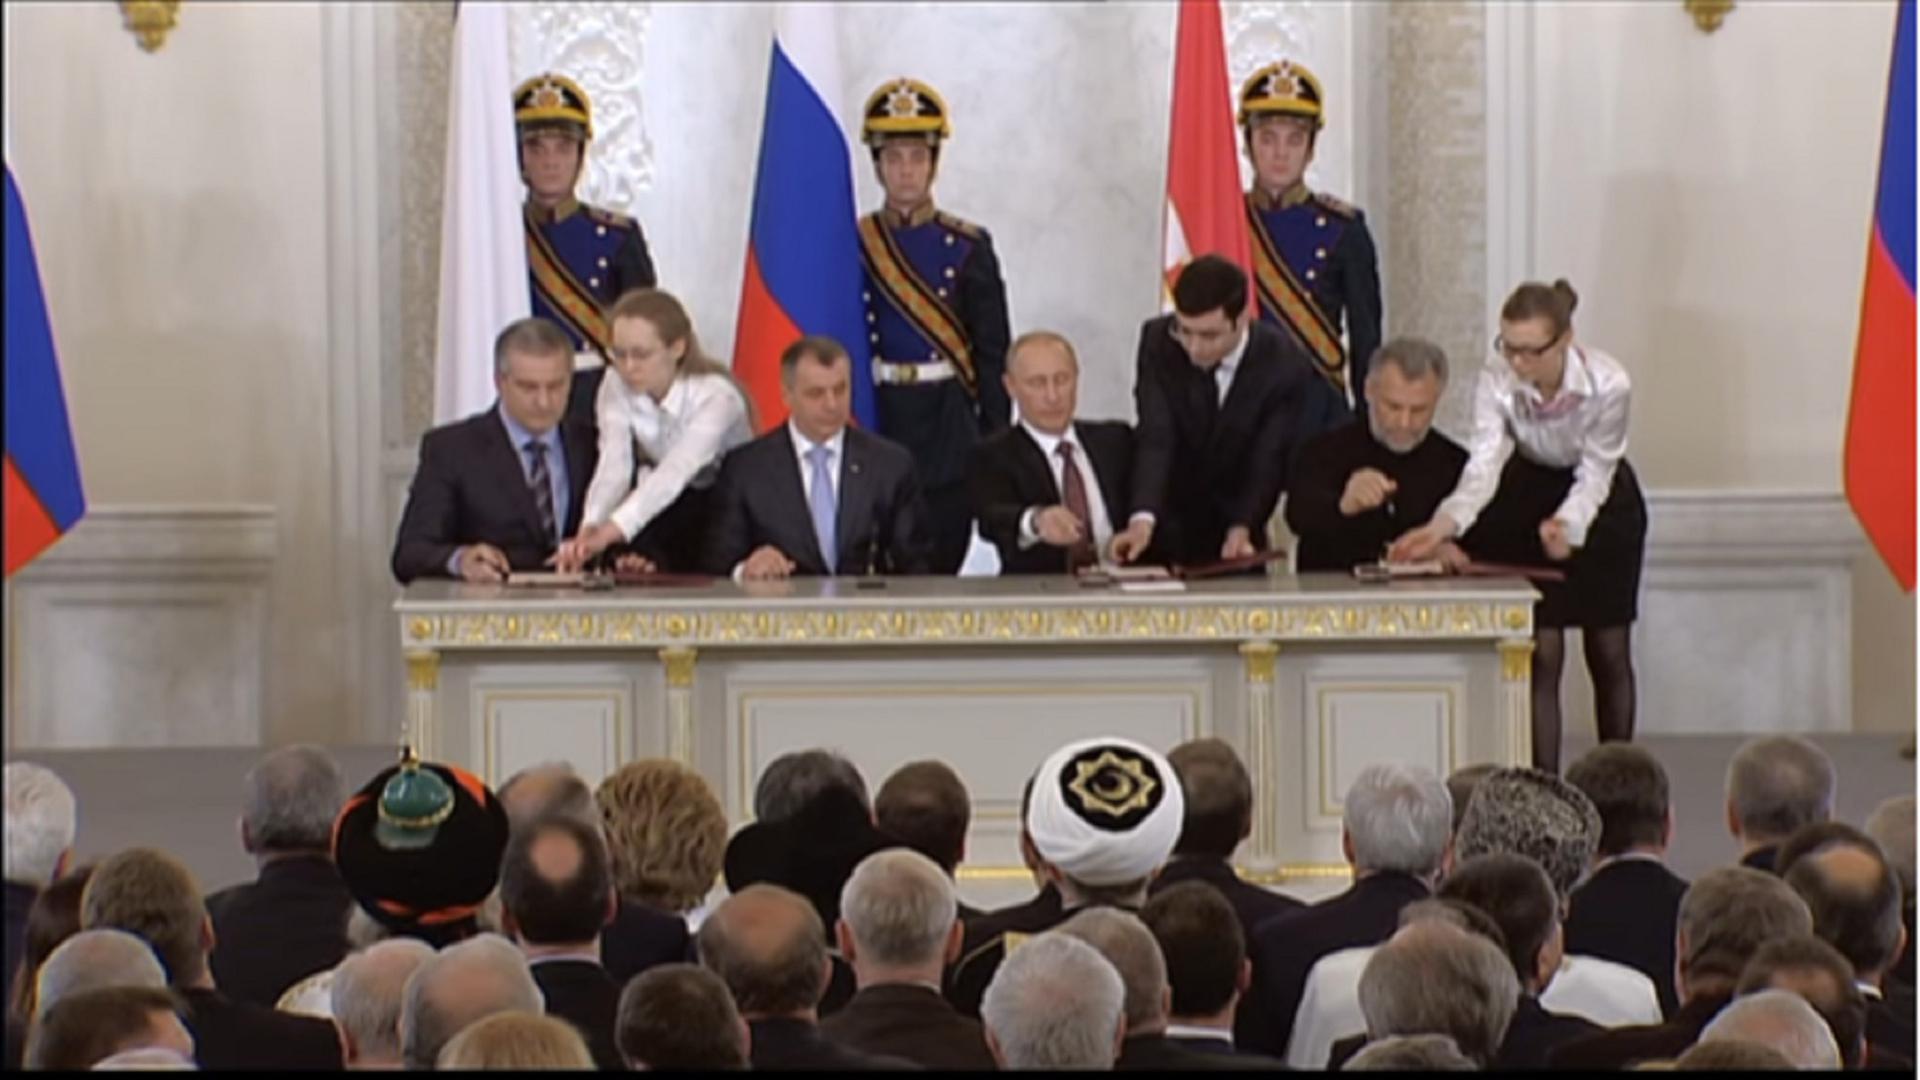 2014: Putin unterzeichnet Krim-Eingliederung